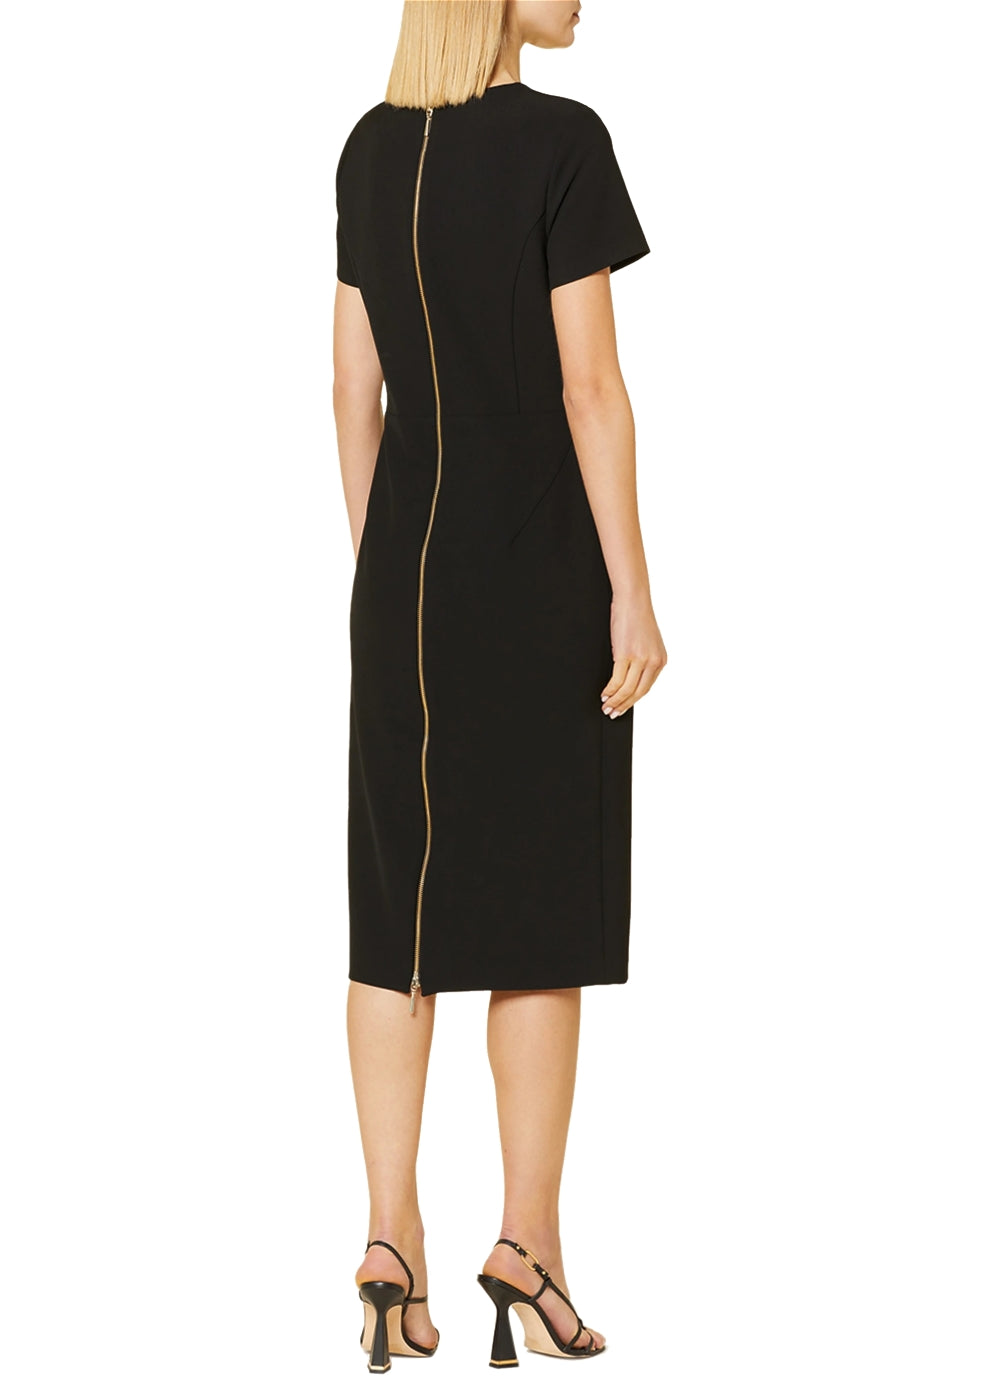 NVSCO Kleid Colette in schwarz. Schmal geschnittenes Etuikleid in kompakter Techno Viskose Qualität von NVSCO 2107 online kaufen. Designer Kleid mit dekorativem Reißverschluss in gold am Rücken aus der neuen NVSCO 2107 Kollektion.